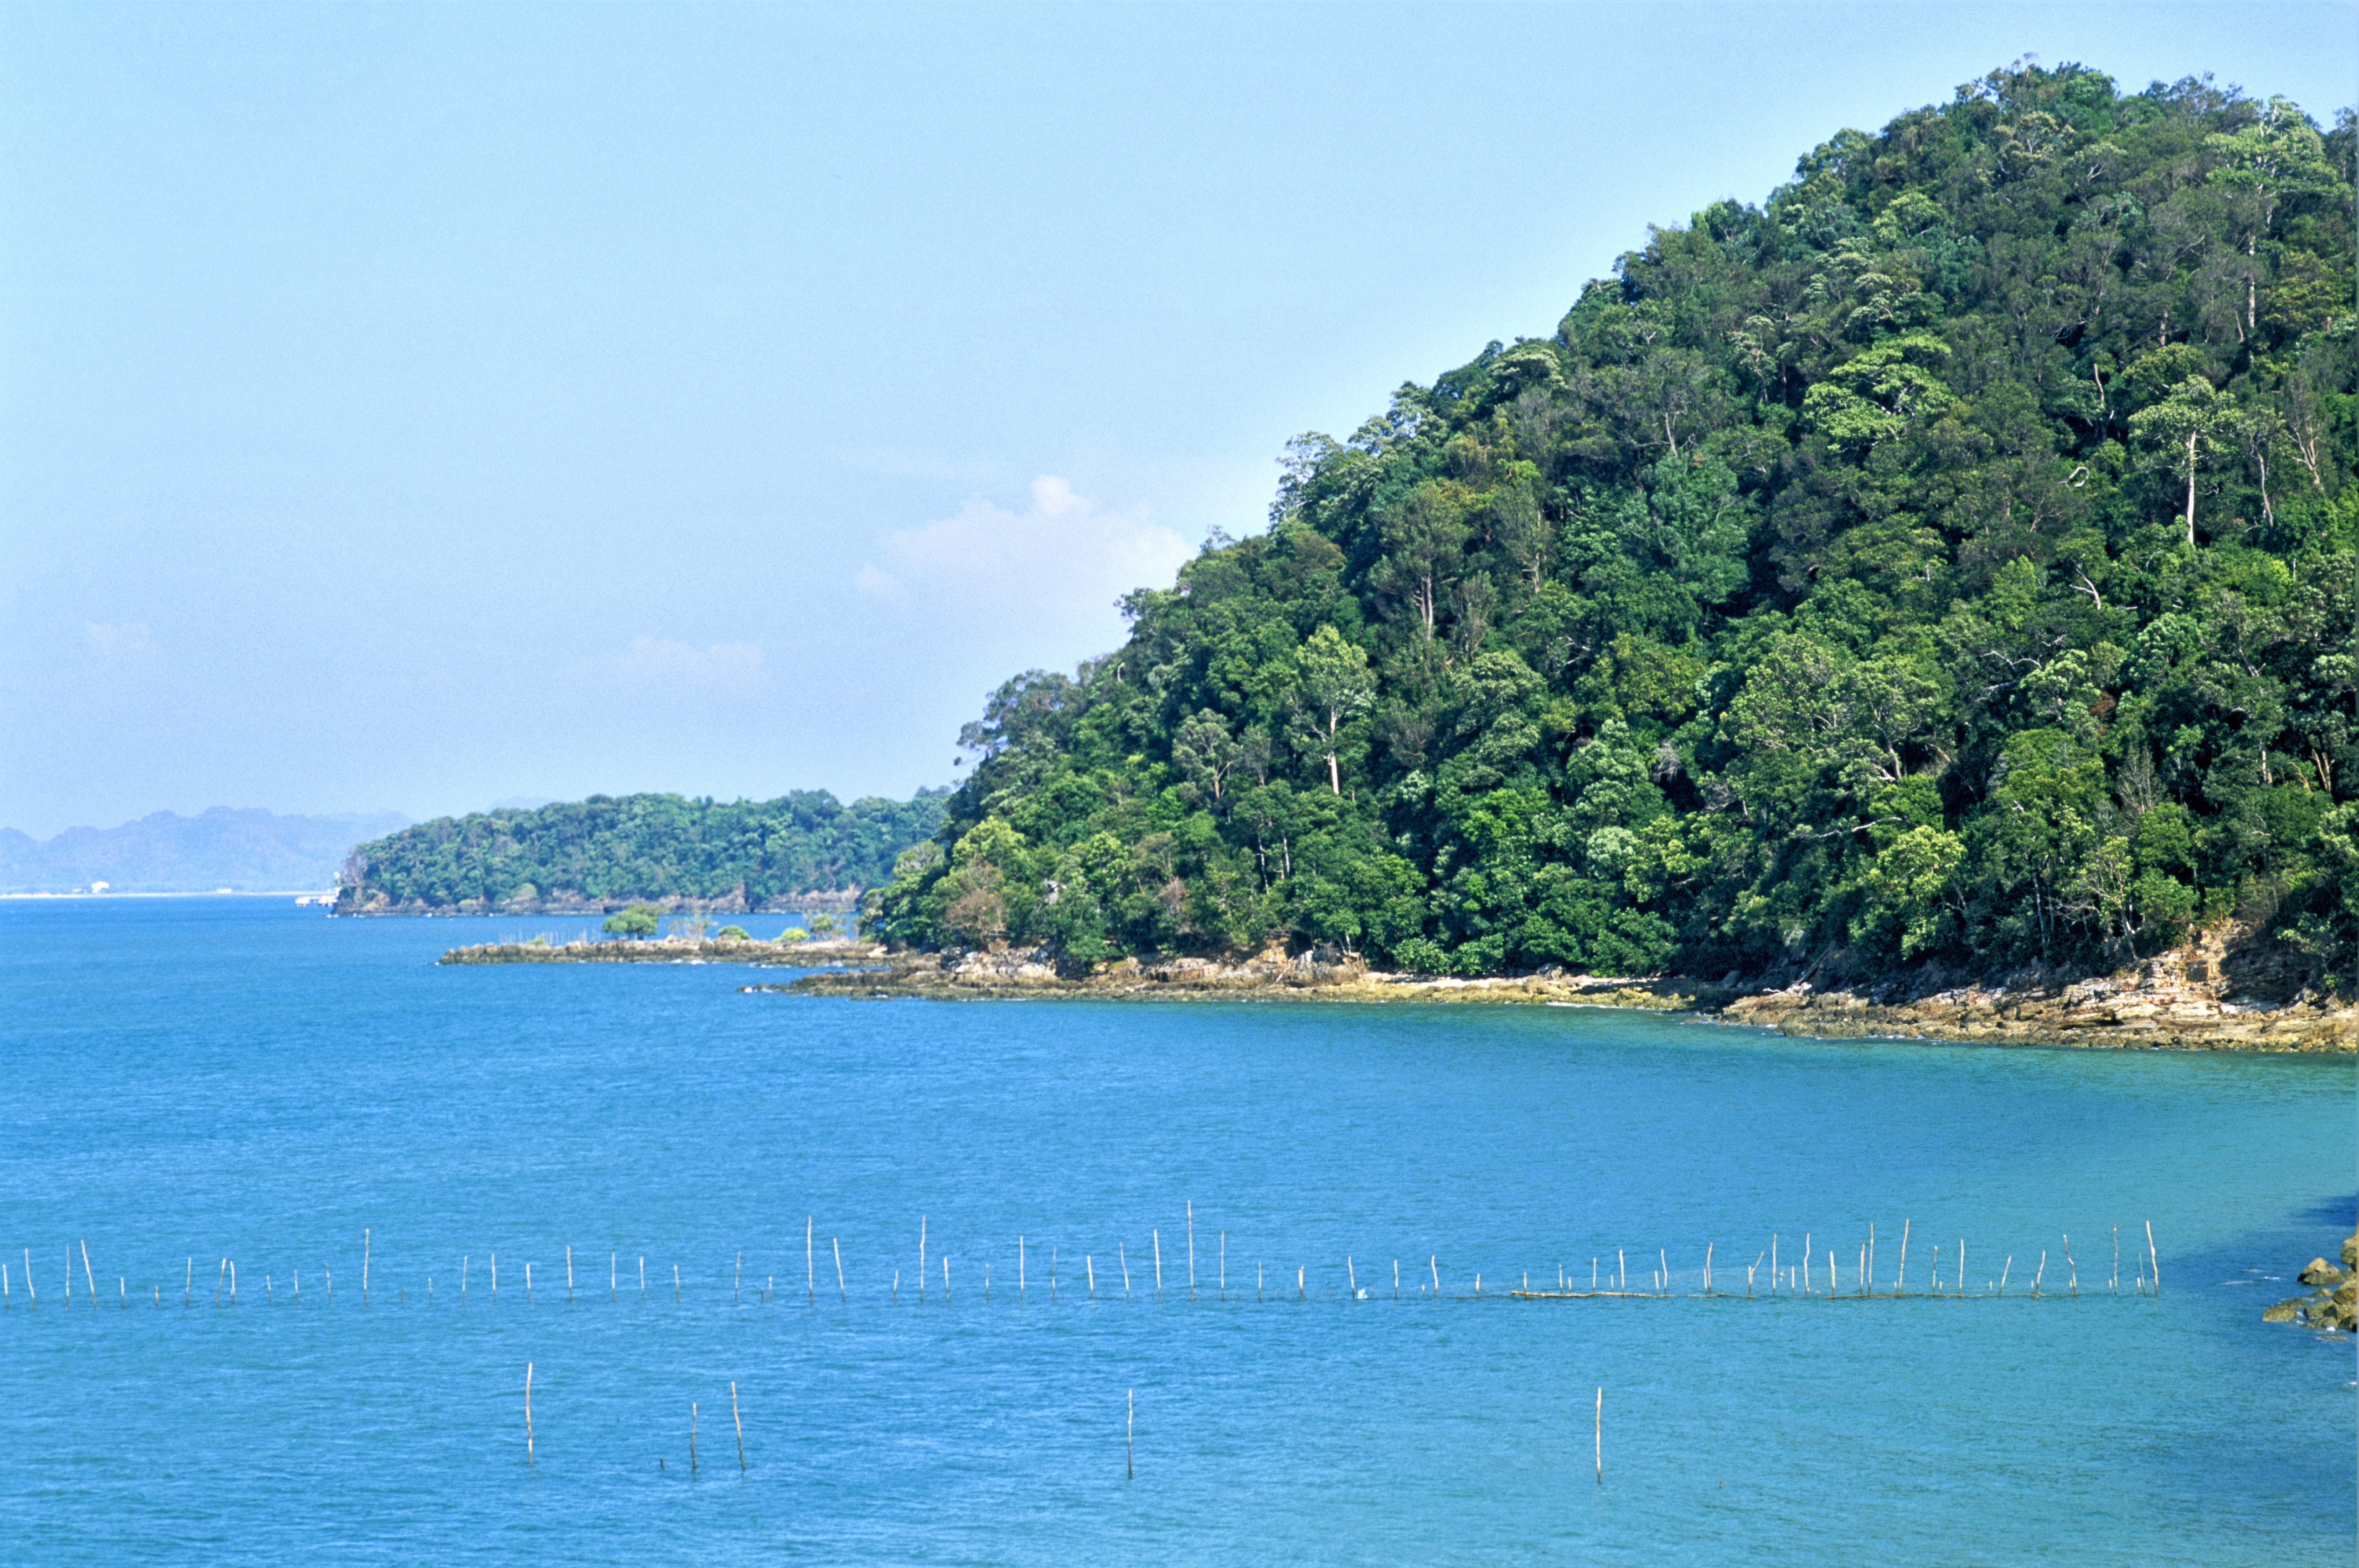  Pantai Pasir Tengkorak  One of the Top Attractions in 